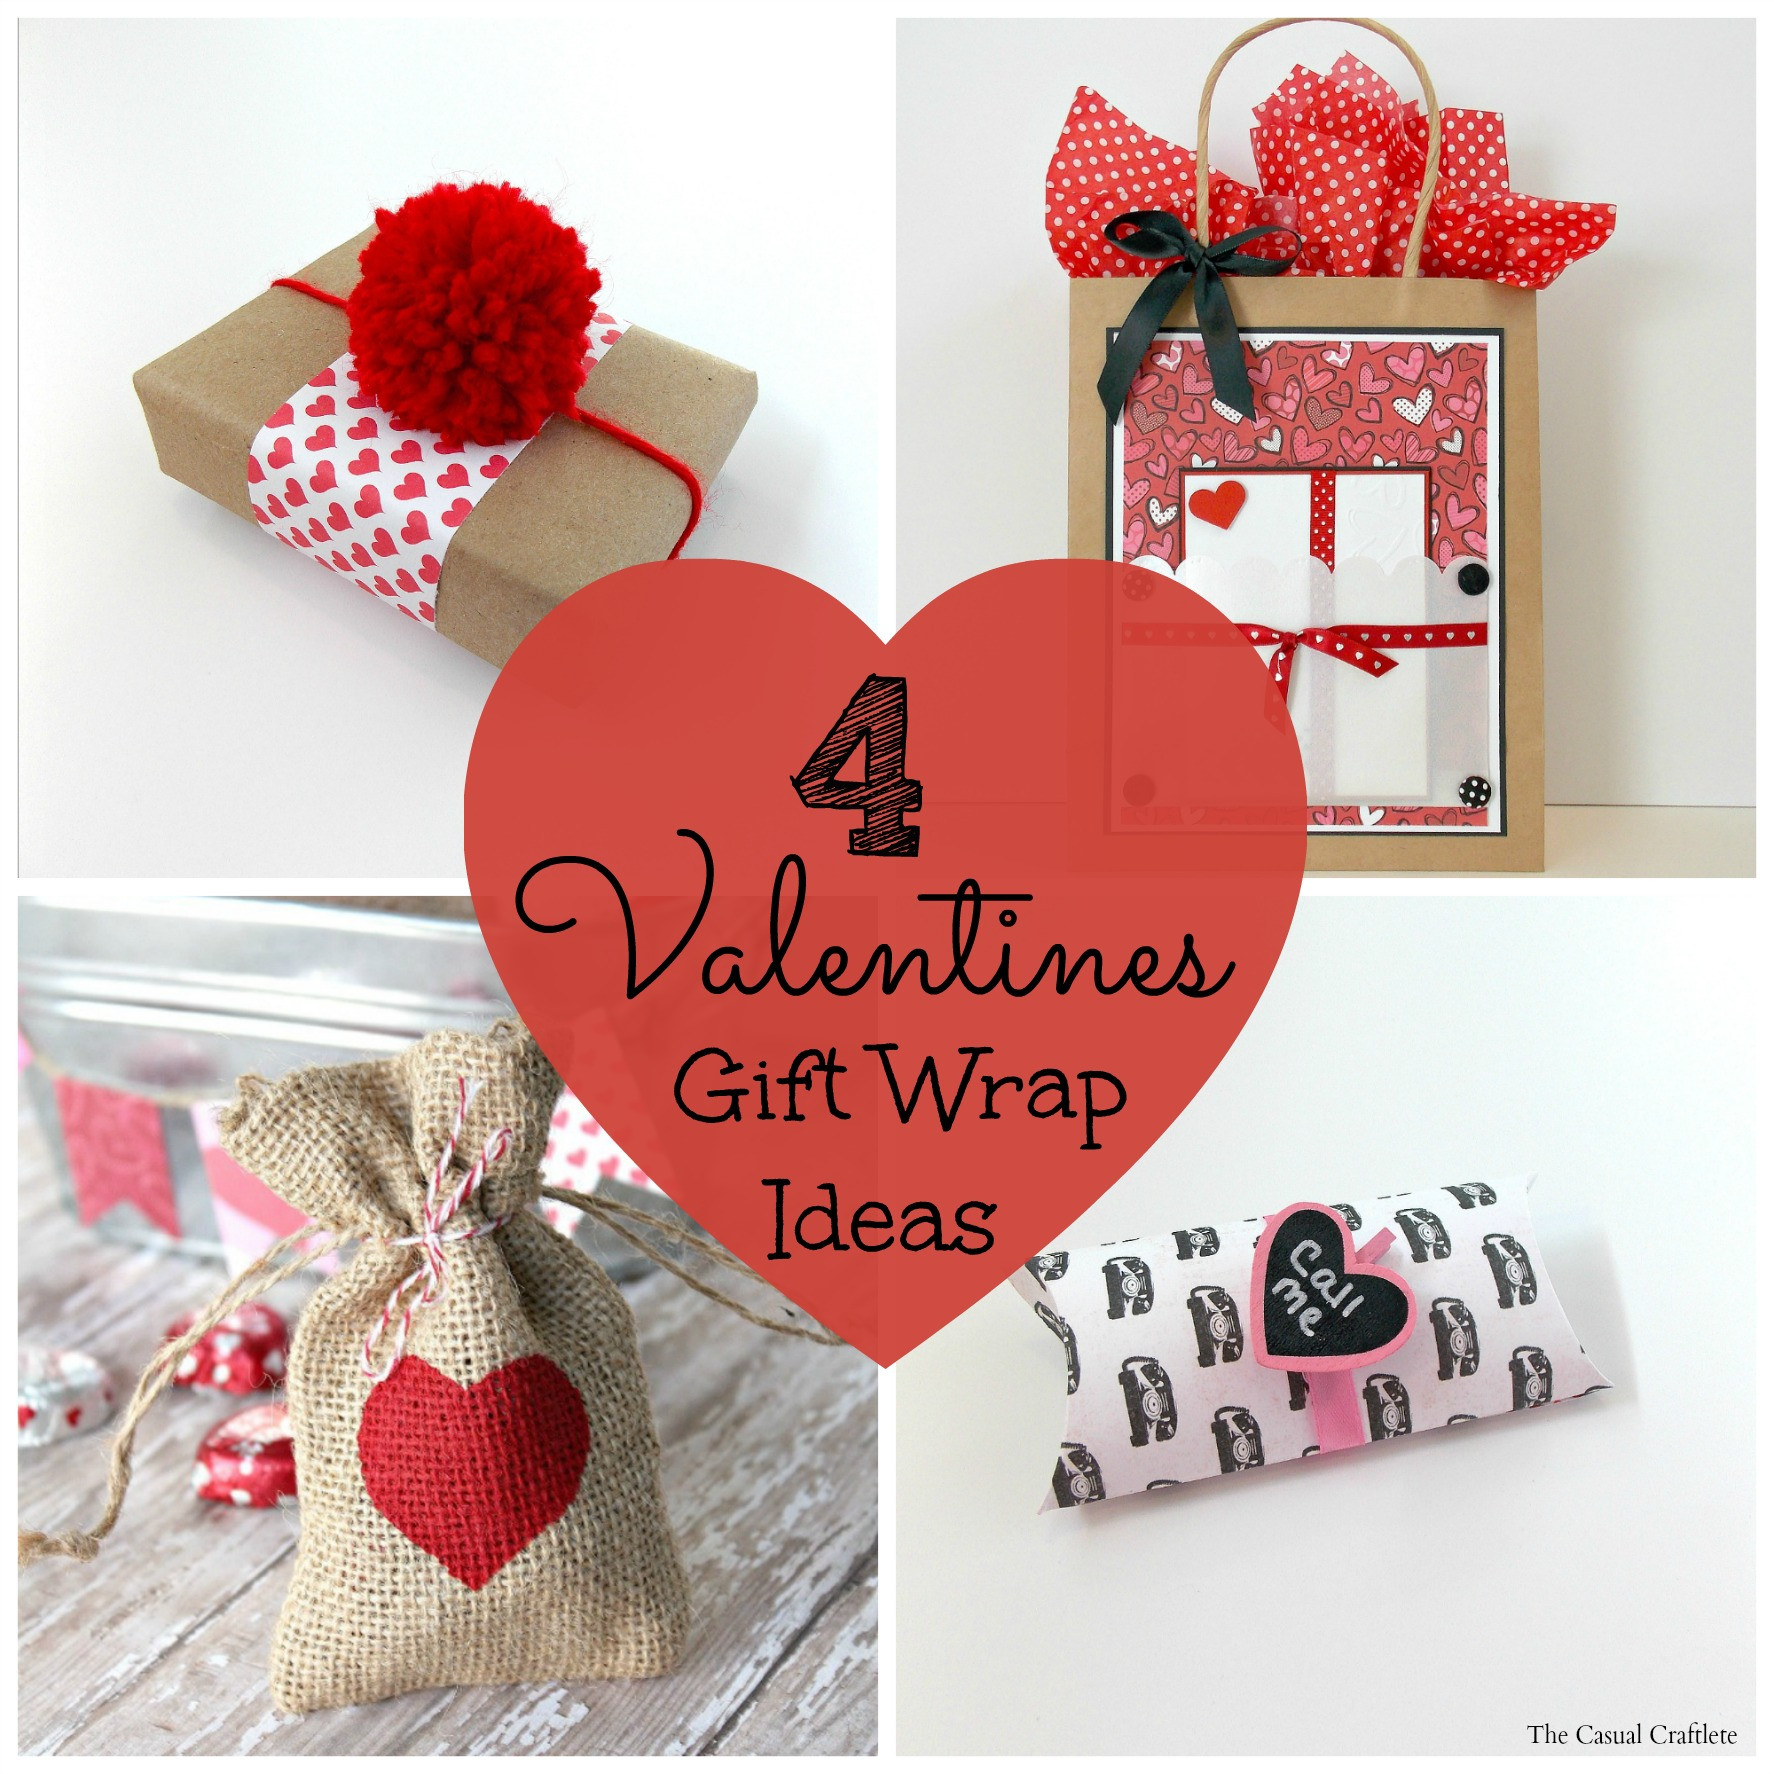 Valentines Gift Ideas Pinterest
 4 Valentines Gift Wrap Ideas Purely Katie